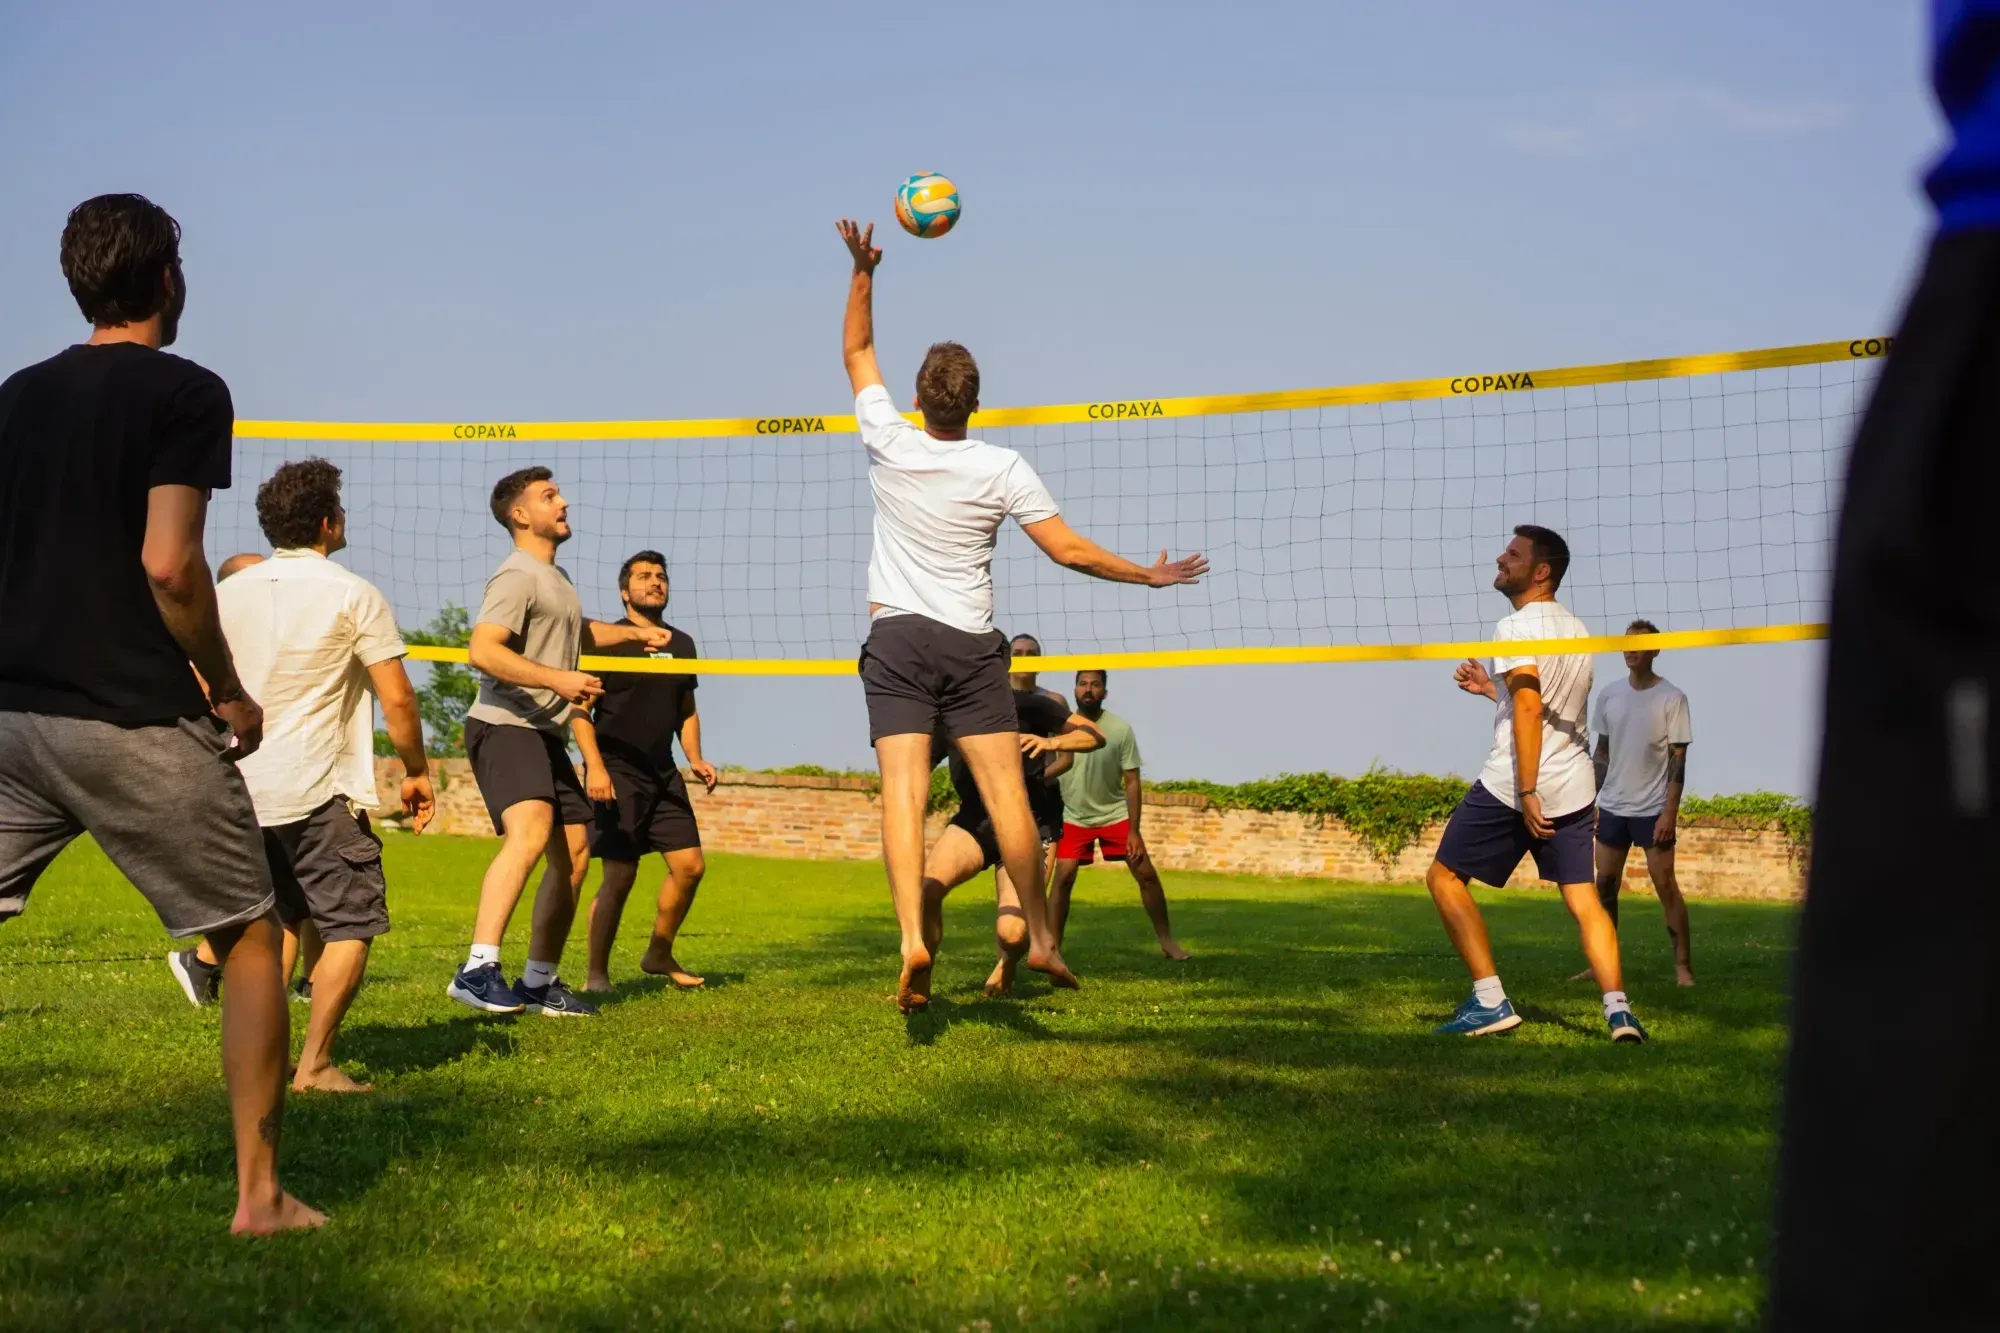 Zwei Gruppen von Männern spielen Volleyball. Ein Mann springt und schlägt den Ball direkt über das Netz. Sie tragen alle kurze Hosen und T-Shirts und spielen auf einer Wiese in der Sonne.